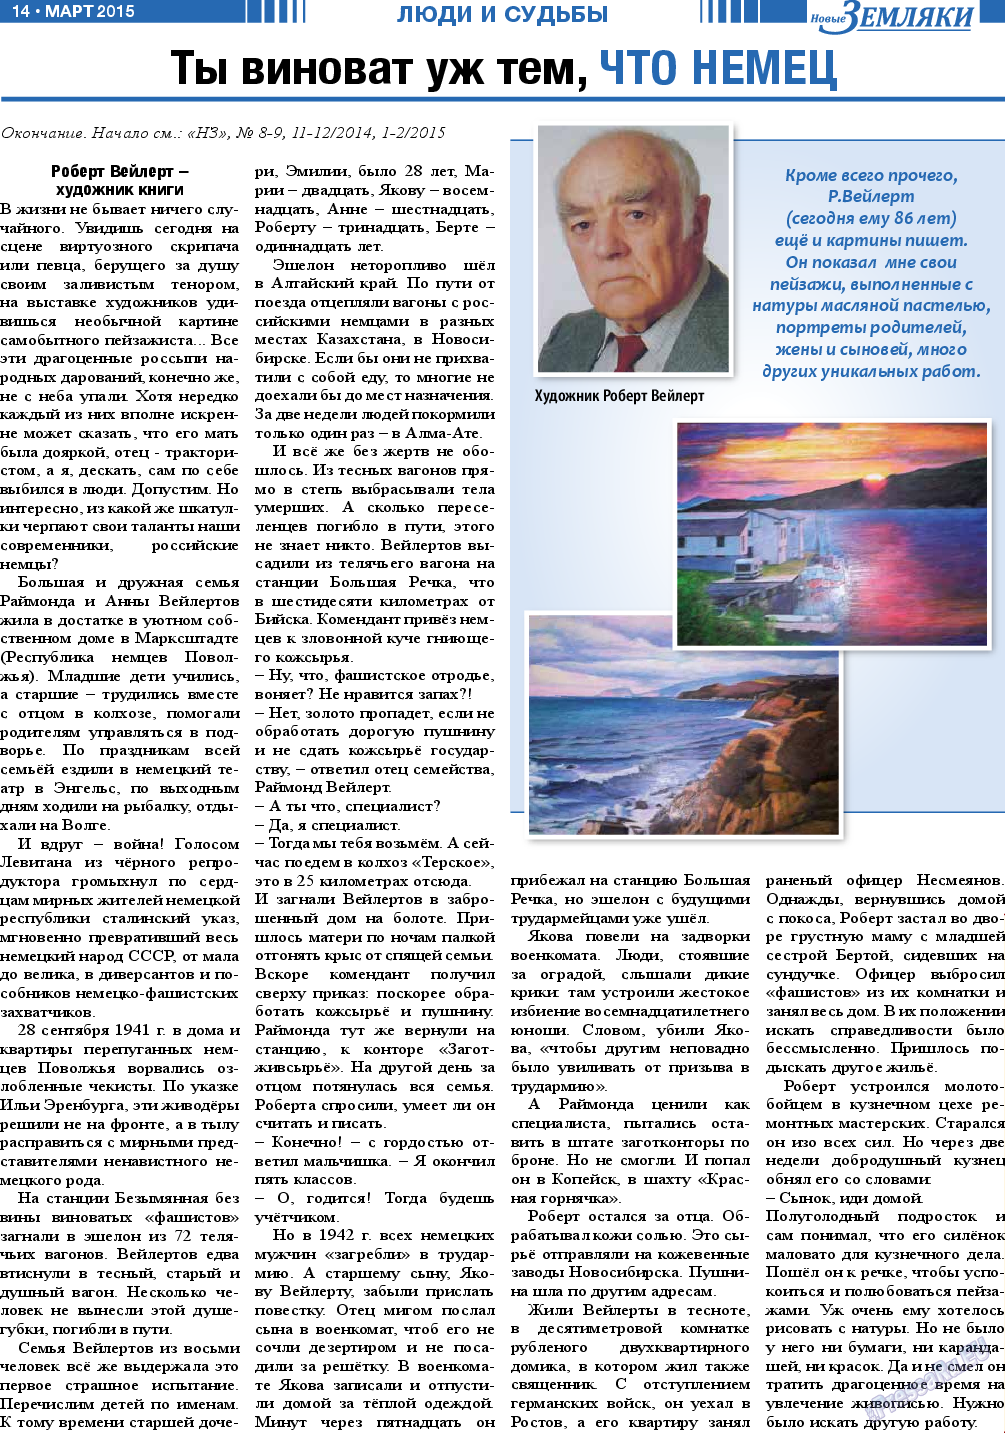 Новые Земляки, газета. 2015 №3 стр.14